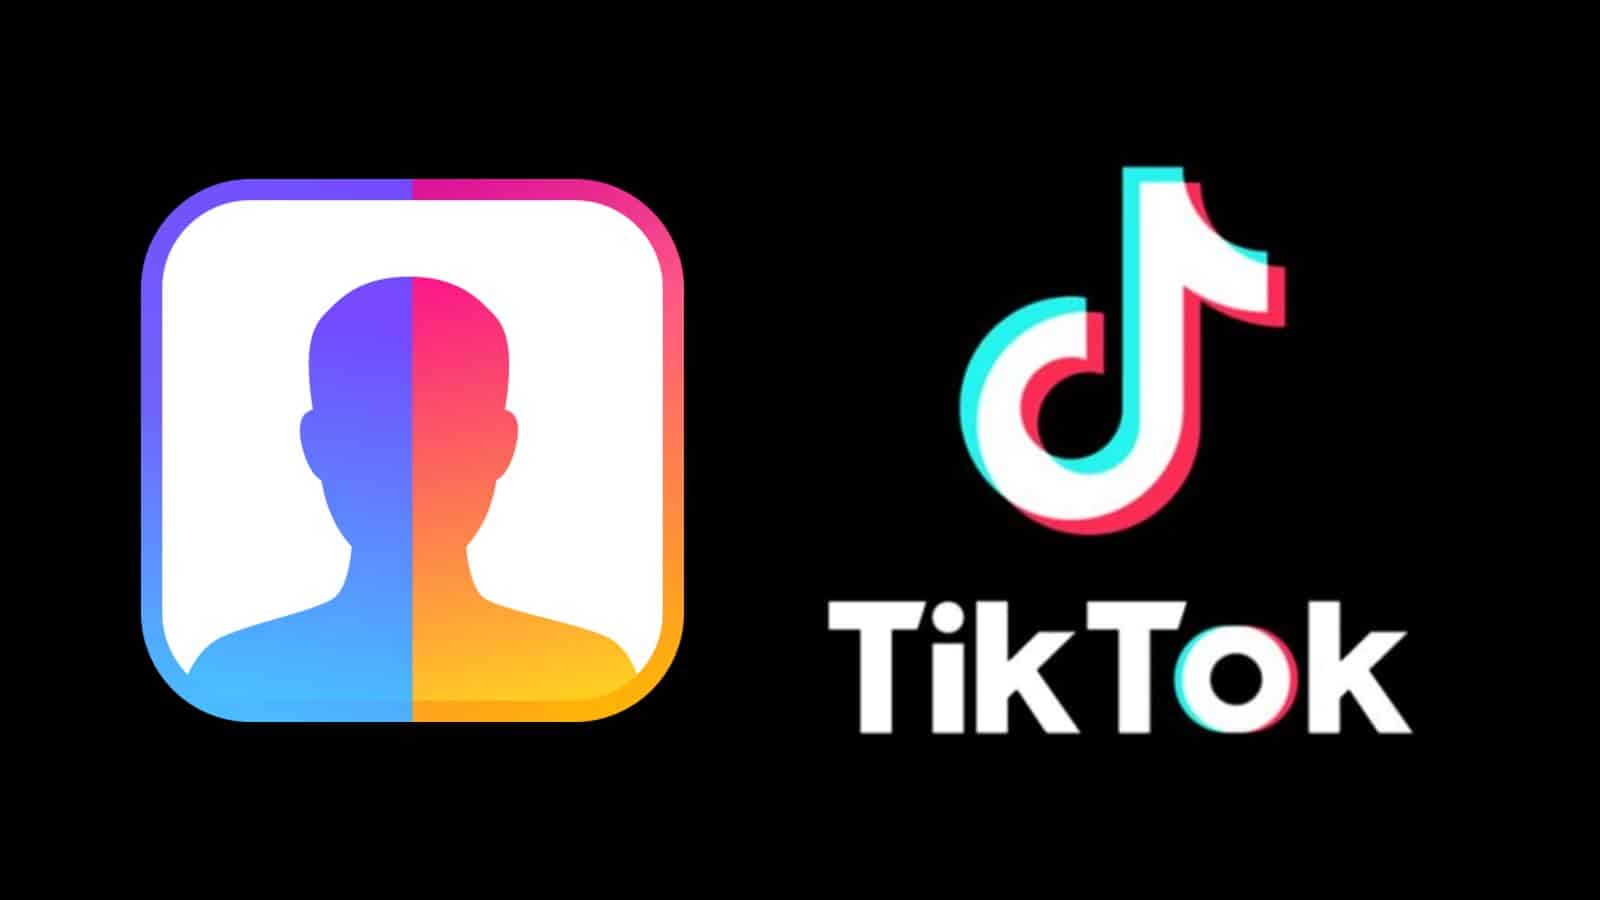 TikTok logo next to the FaceApp logo